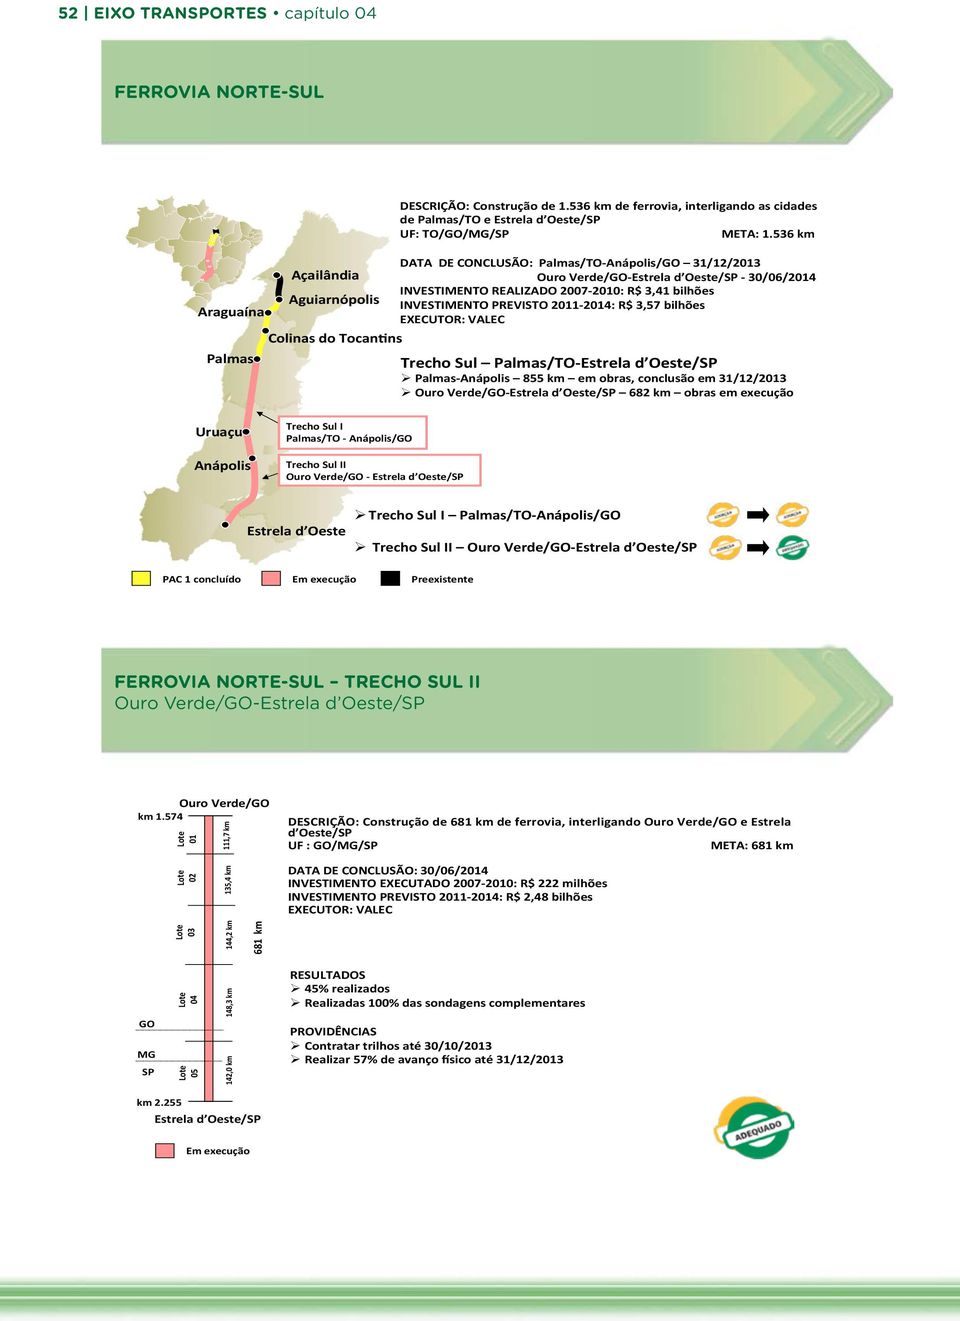 536 km DATA DE CONCLUSÃO: Palmas/TO- Anápolis/GO 31/12/2013 Araguaína Açailândia Aguiarnópolis Ouro Verde/GO- Estrela d Oeste/SP - 30/06/2014 INVESTIMENTO REALIZADO 2007-2010: R$ 3,41 bilhões